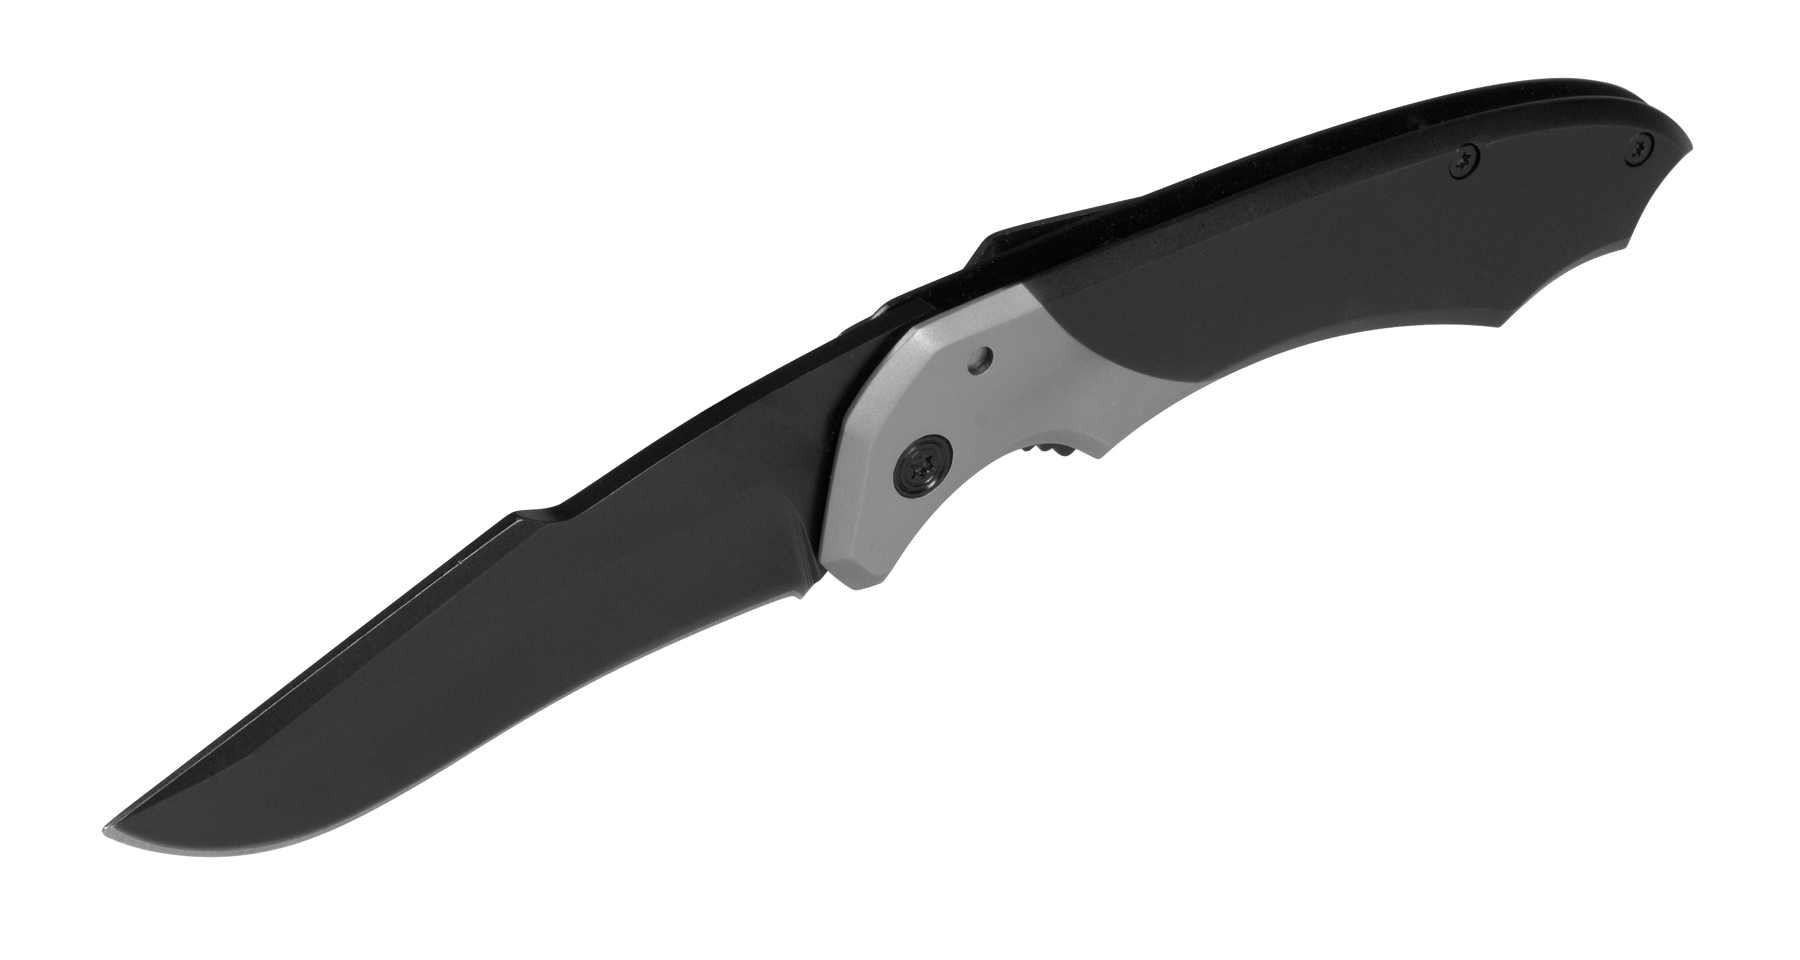 Noż kieszonkowy BLACK-CUT, czarny